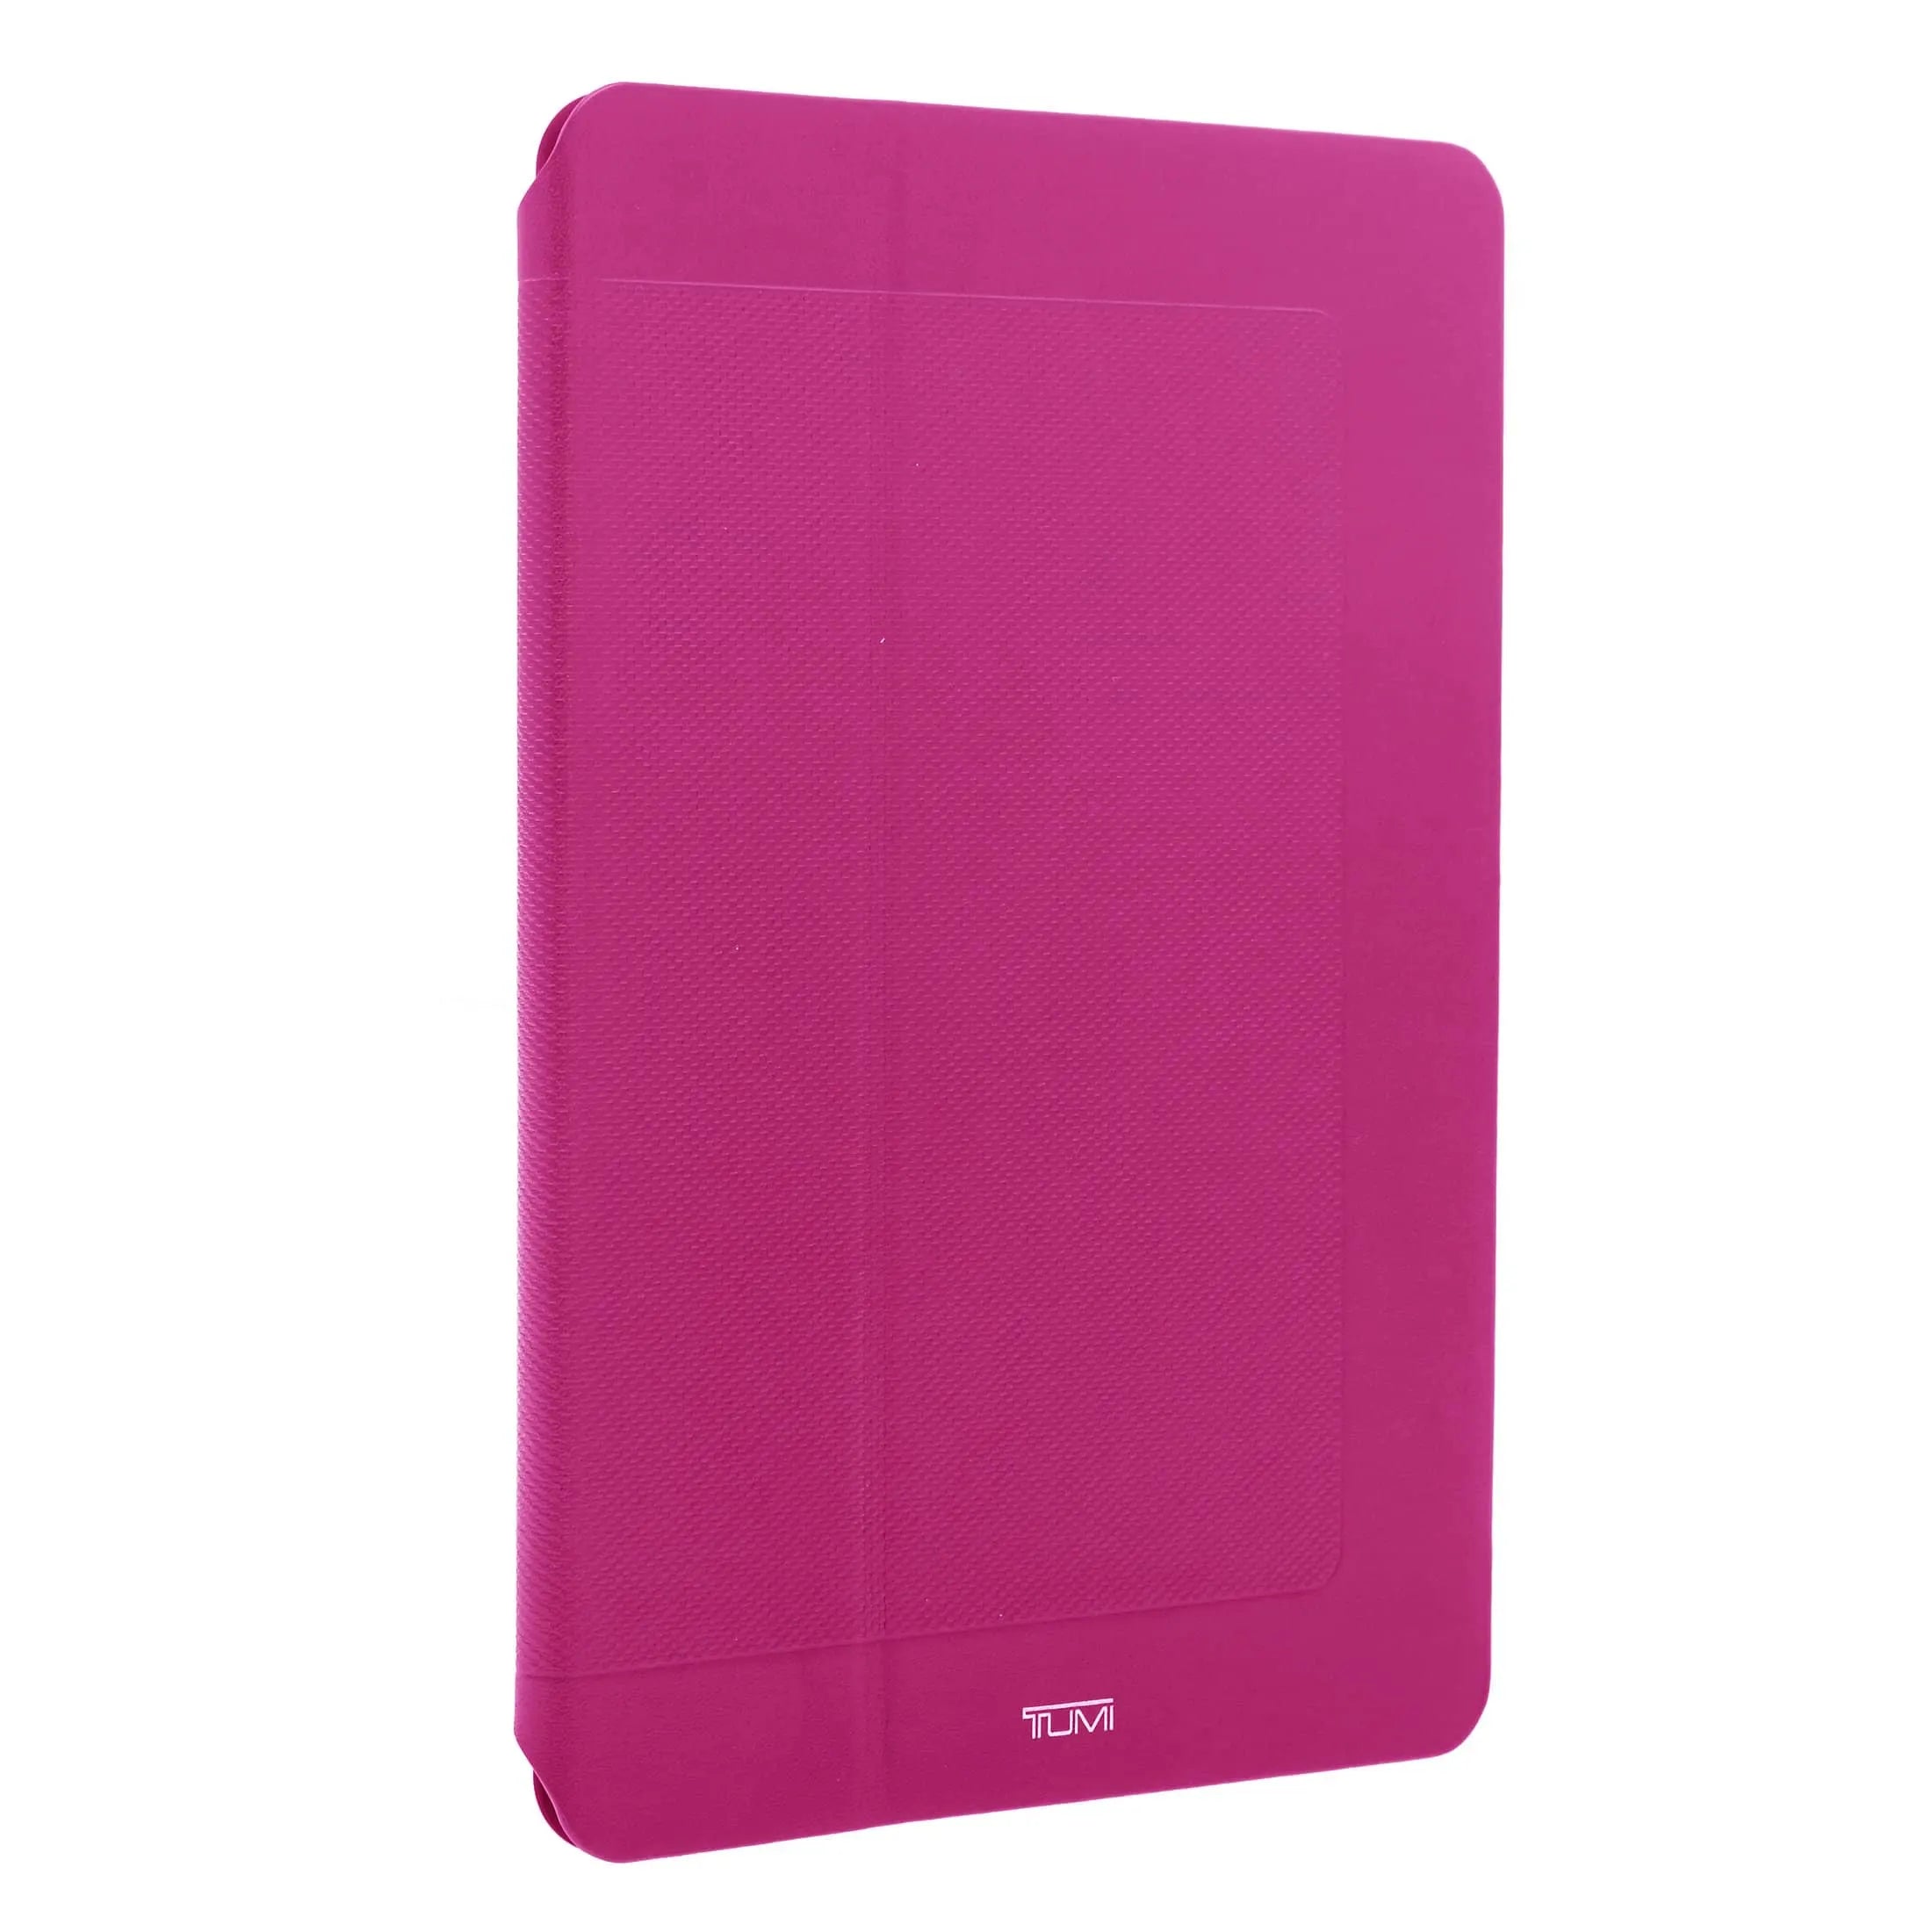 Etui de protection en cuir Tumi Accessories pour iPad Air 24 cm - fuchsia